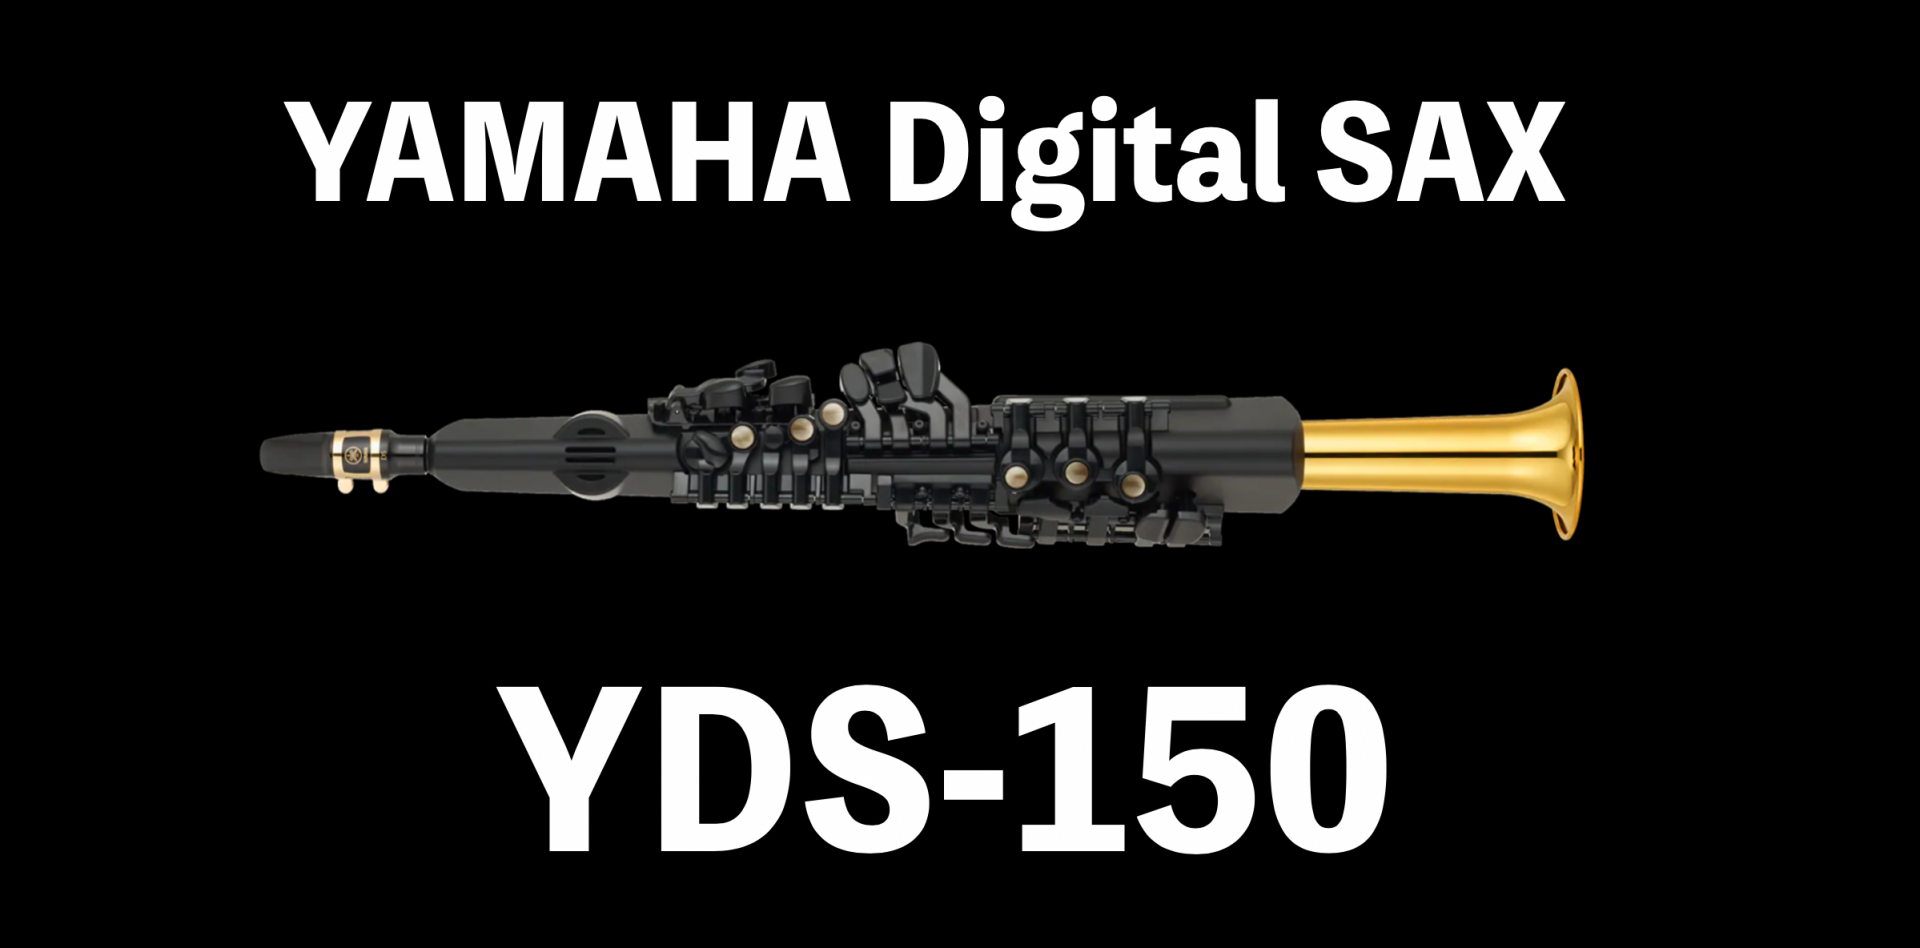 YAMAHAデジタルサックス　YDS-150のご紹介